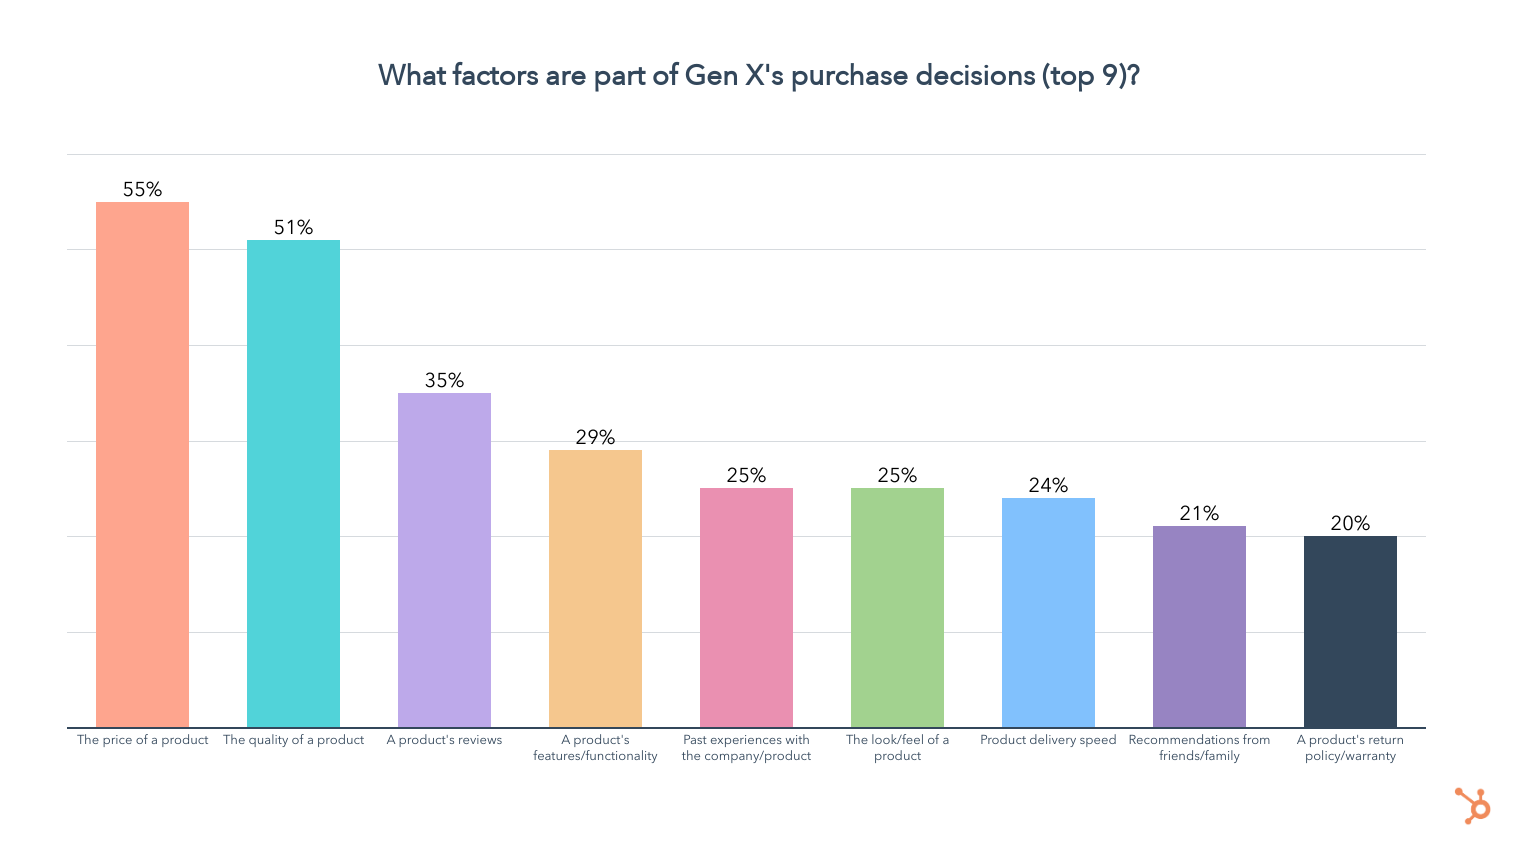 Giá cả và chất lượng là những yếu tố hàng đầu khi đưa ra quyết định mua Gen X.